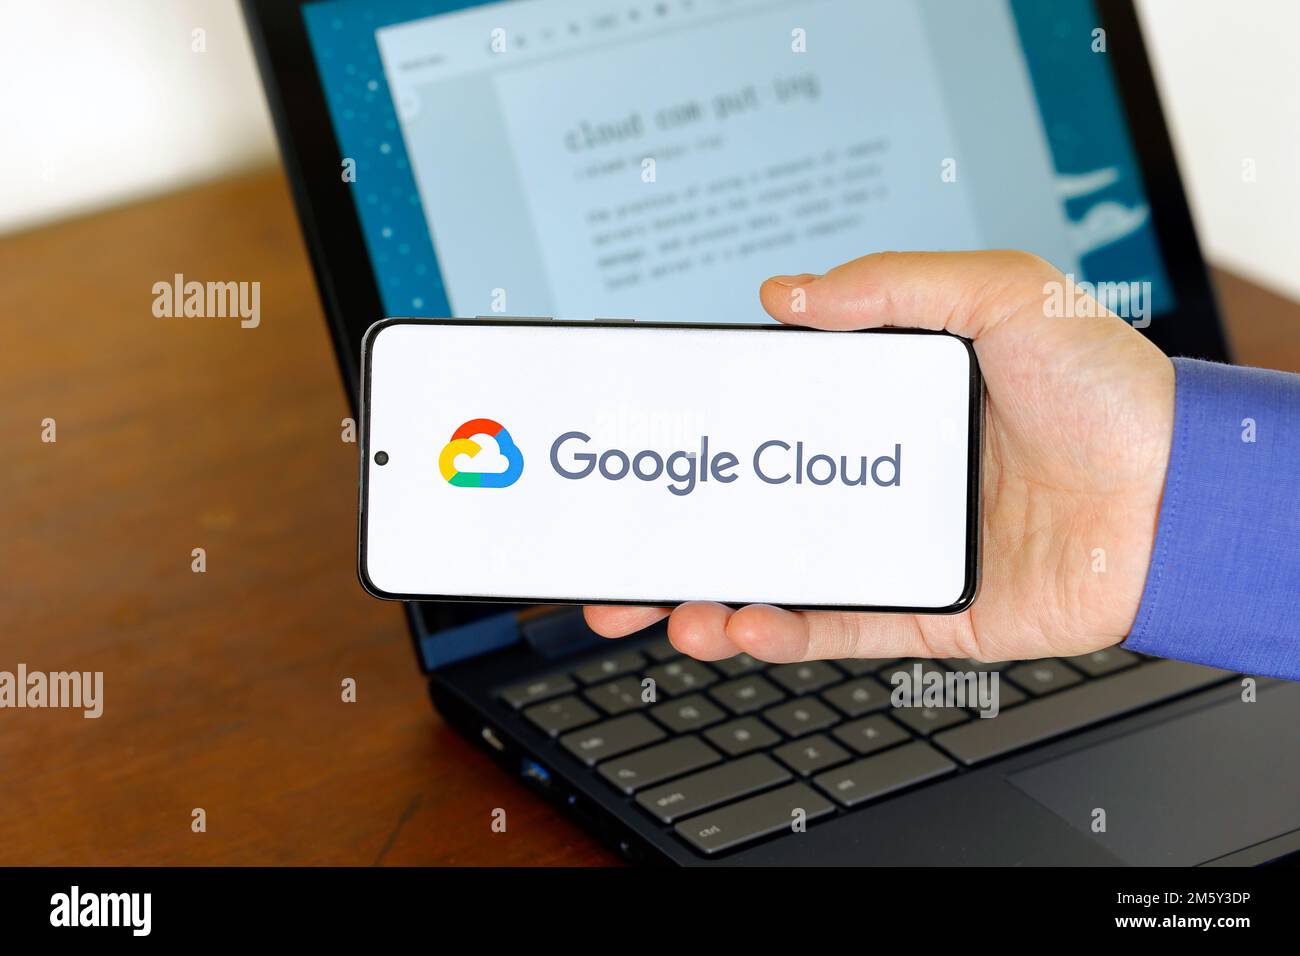 Logo de Google Cloud sur un smartphone devant un ordinateur. Google Cloud est une entreprise de technologie de cloud computing. Banque D'Images